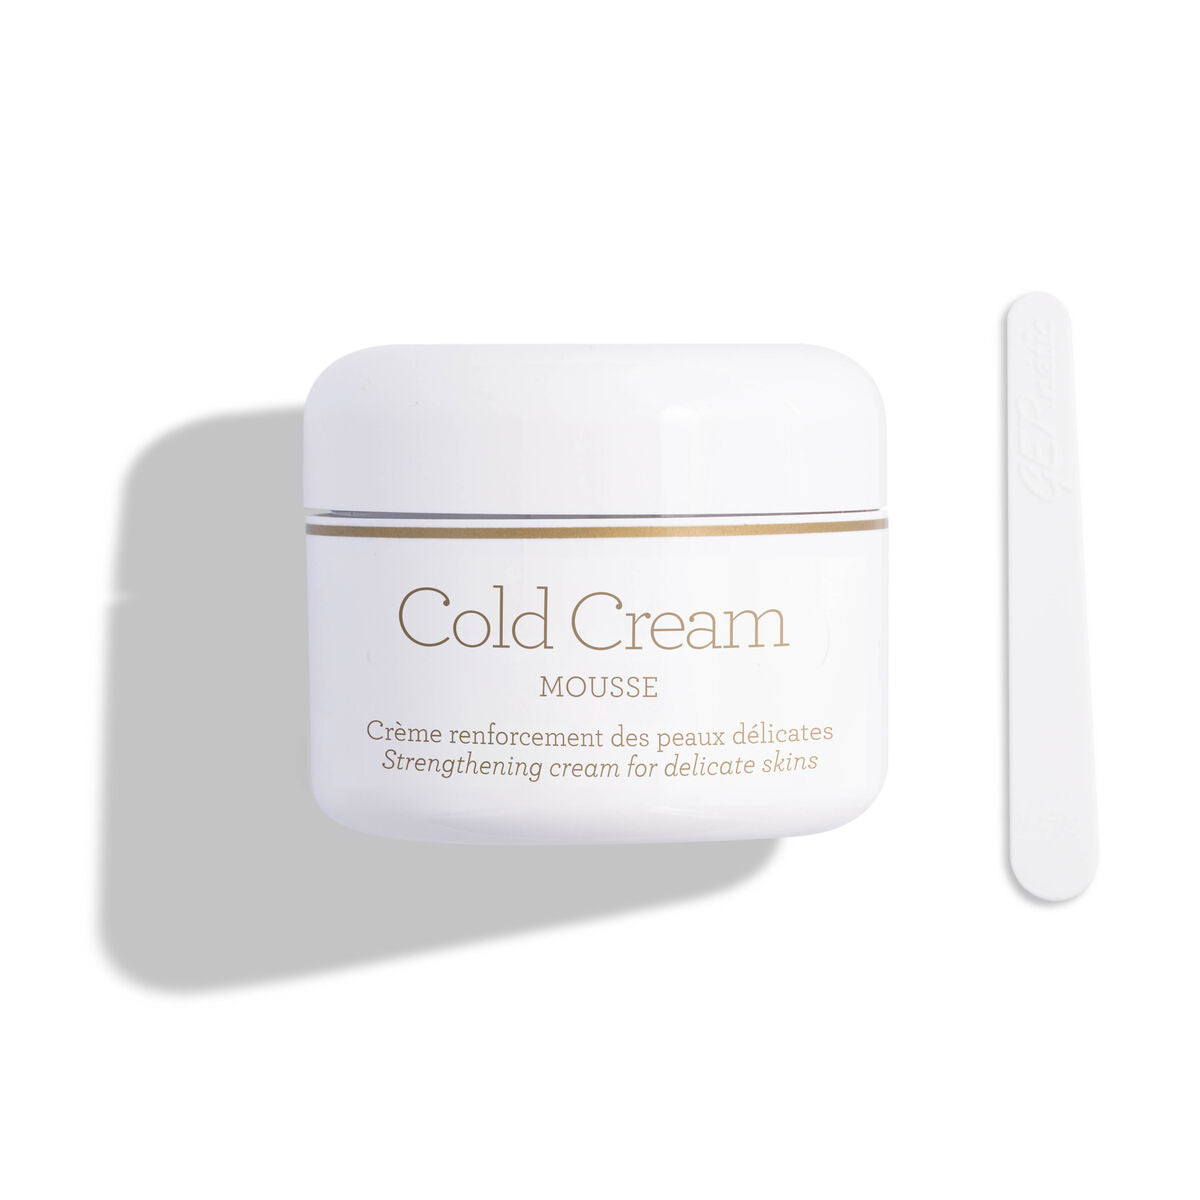 Cold Cream Mousse - vahvistava voide herkälle iholle - Vito Beauty